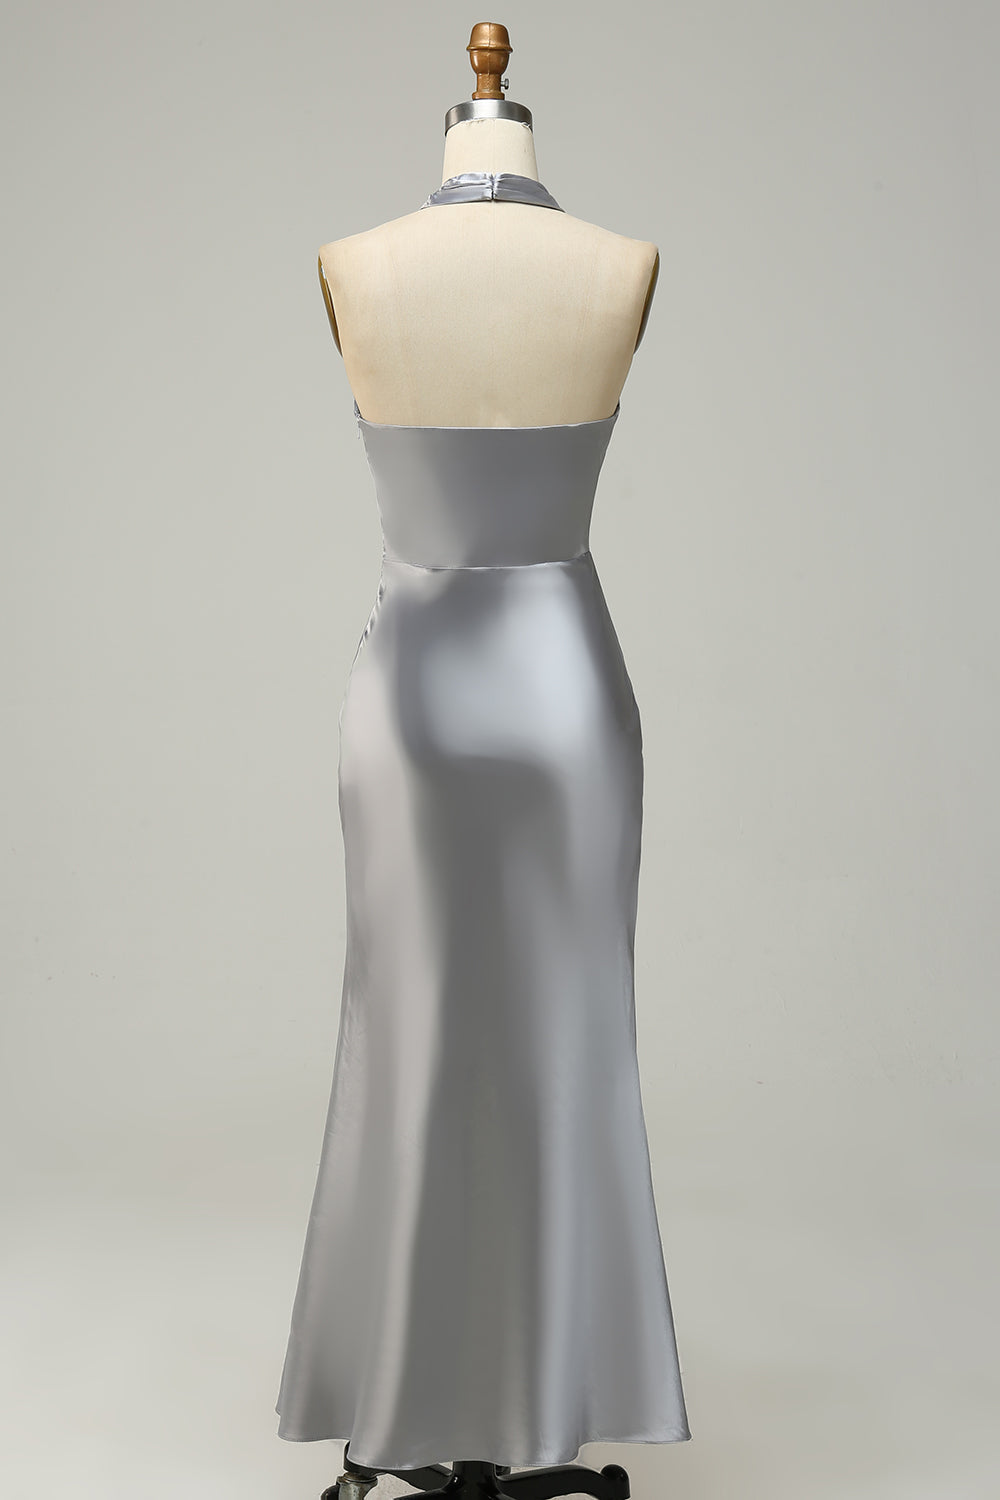 Silver Halter Neck Satin Long Bridesmaid Dress